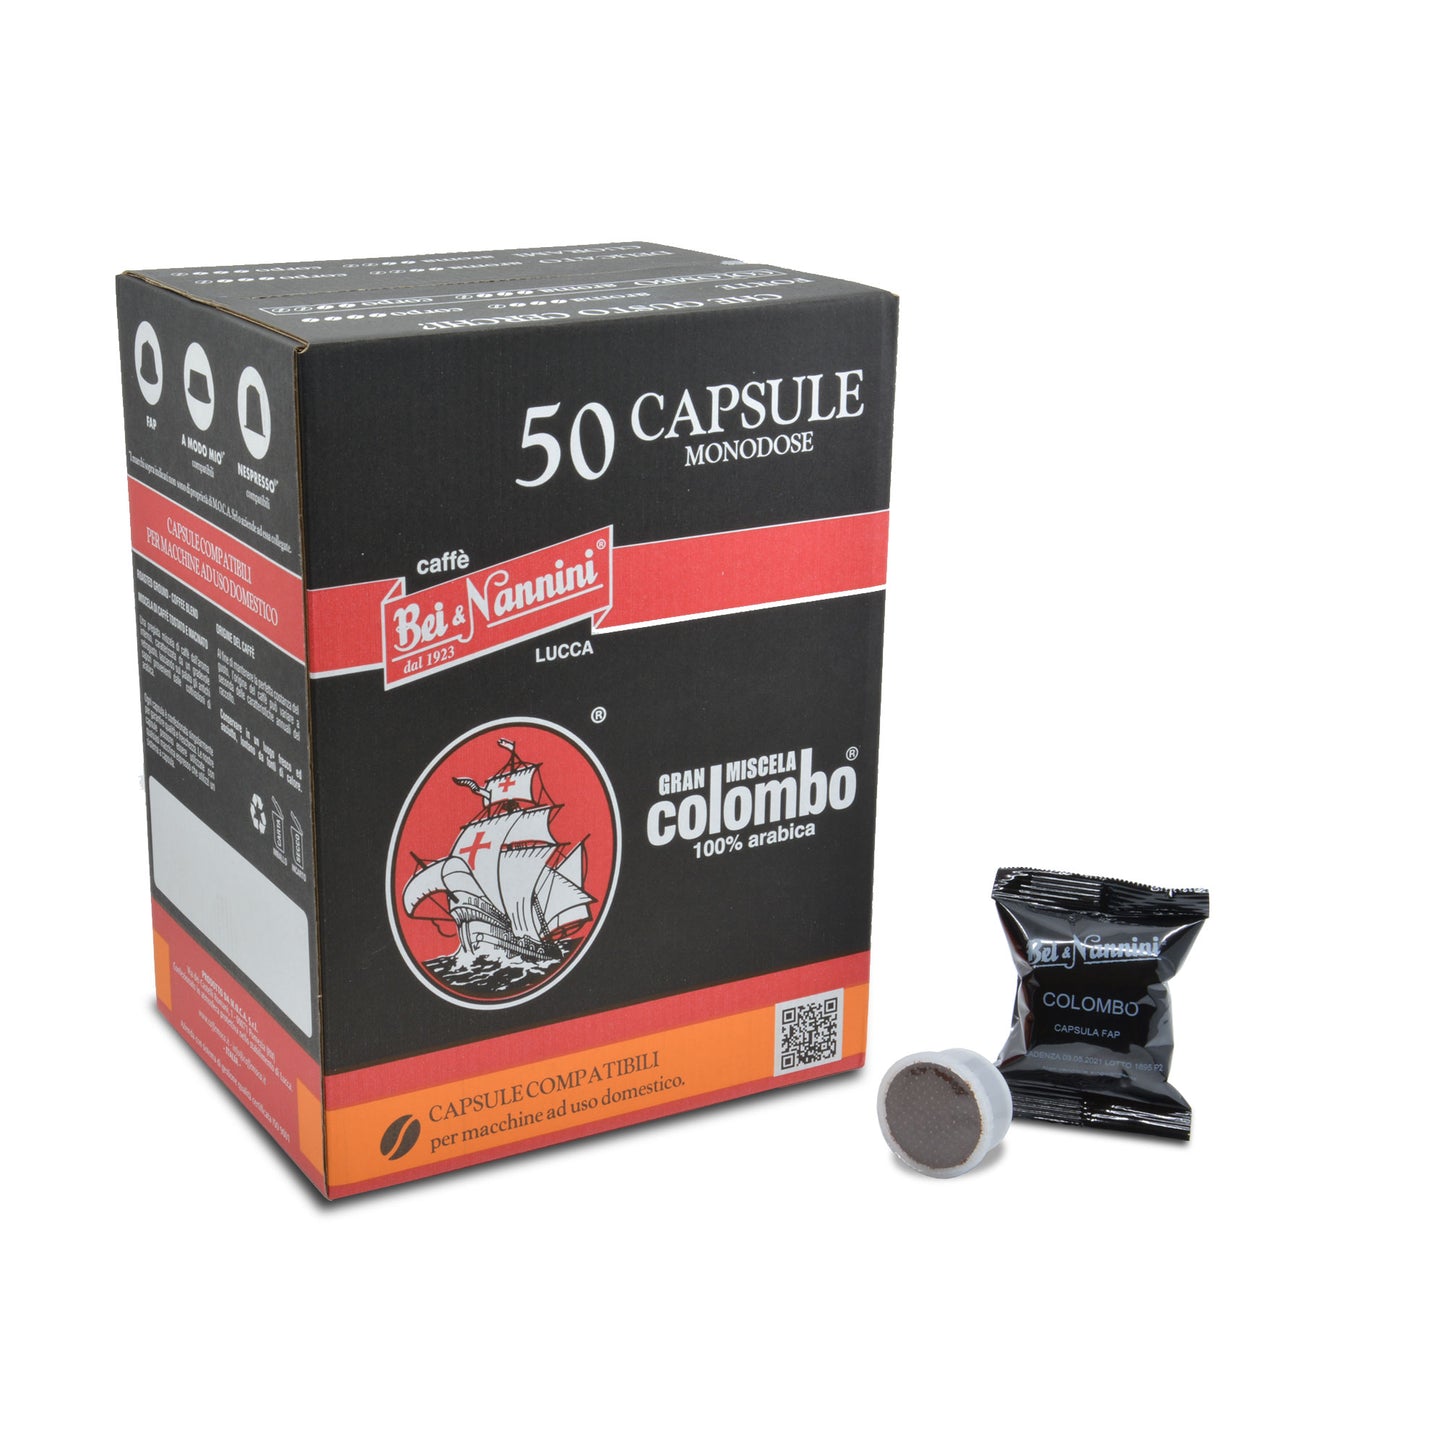 Gran Miscela Colombo® - Capsule compatibili Espresso Point® Fap - scatola da 50 capsule - Pregiata miscela di caffè 100% arabica